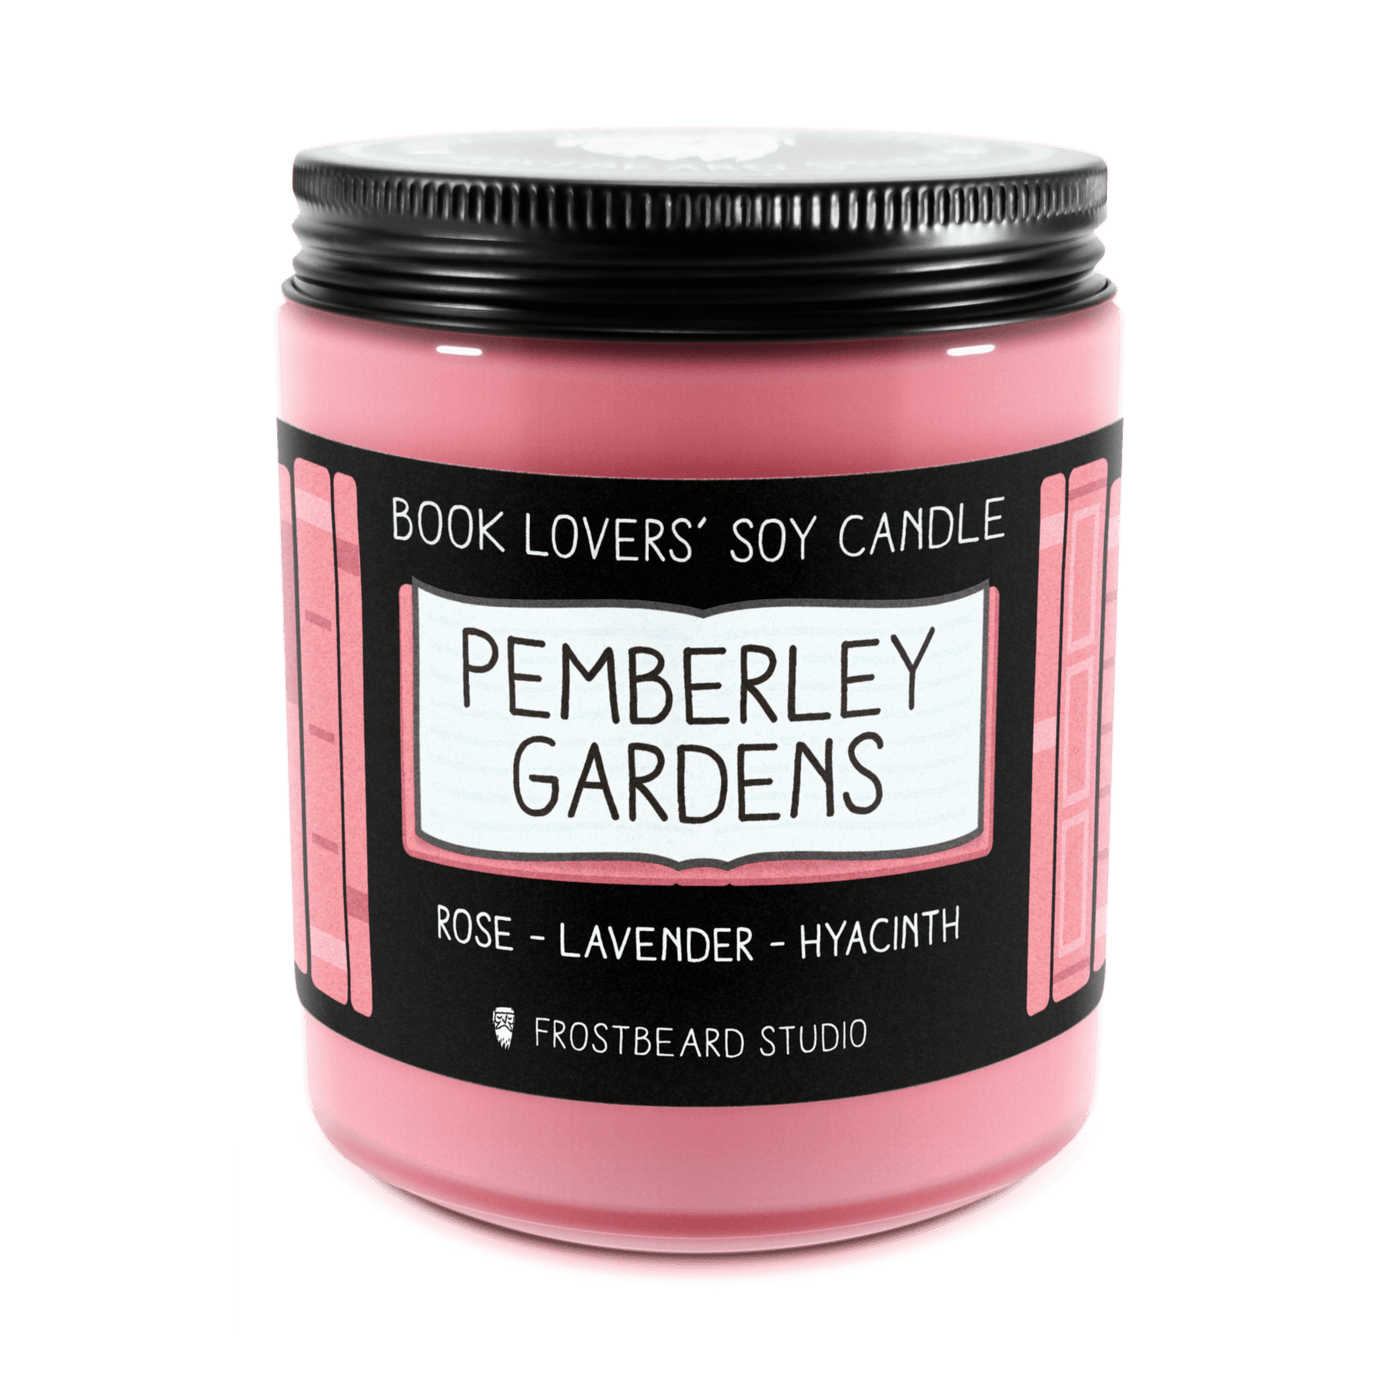 Pemberley Gardens - 8 oz Jar - Book Lovers' Soy Candle - Frostbeard Studio